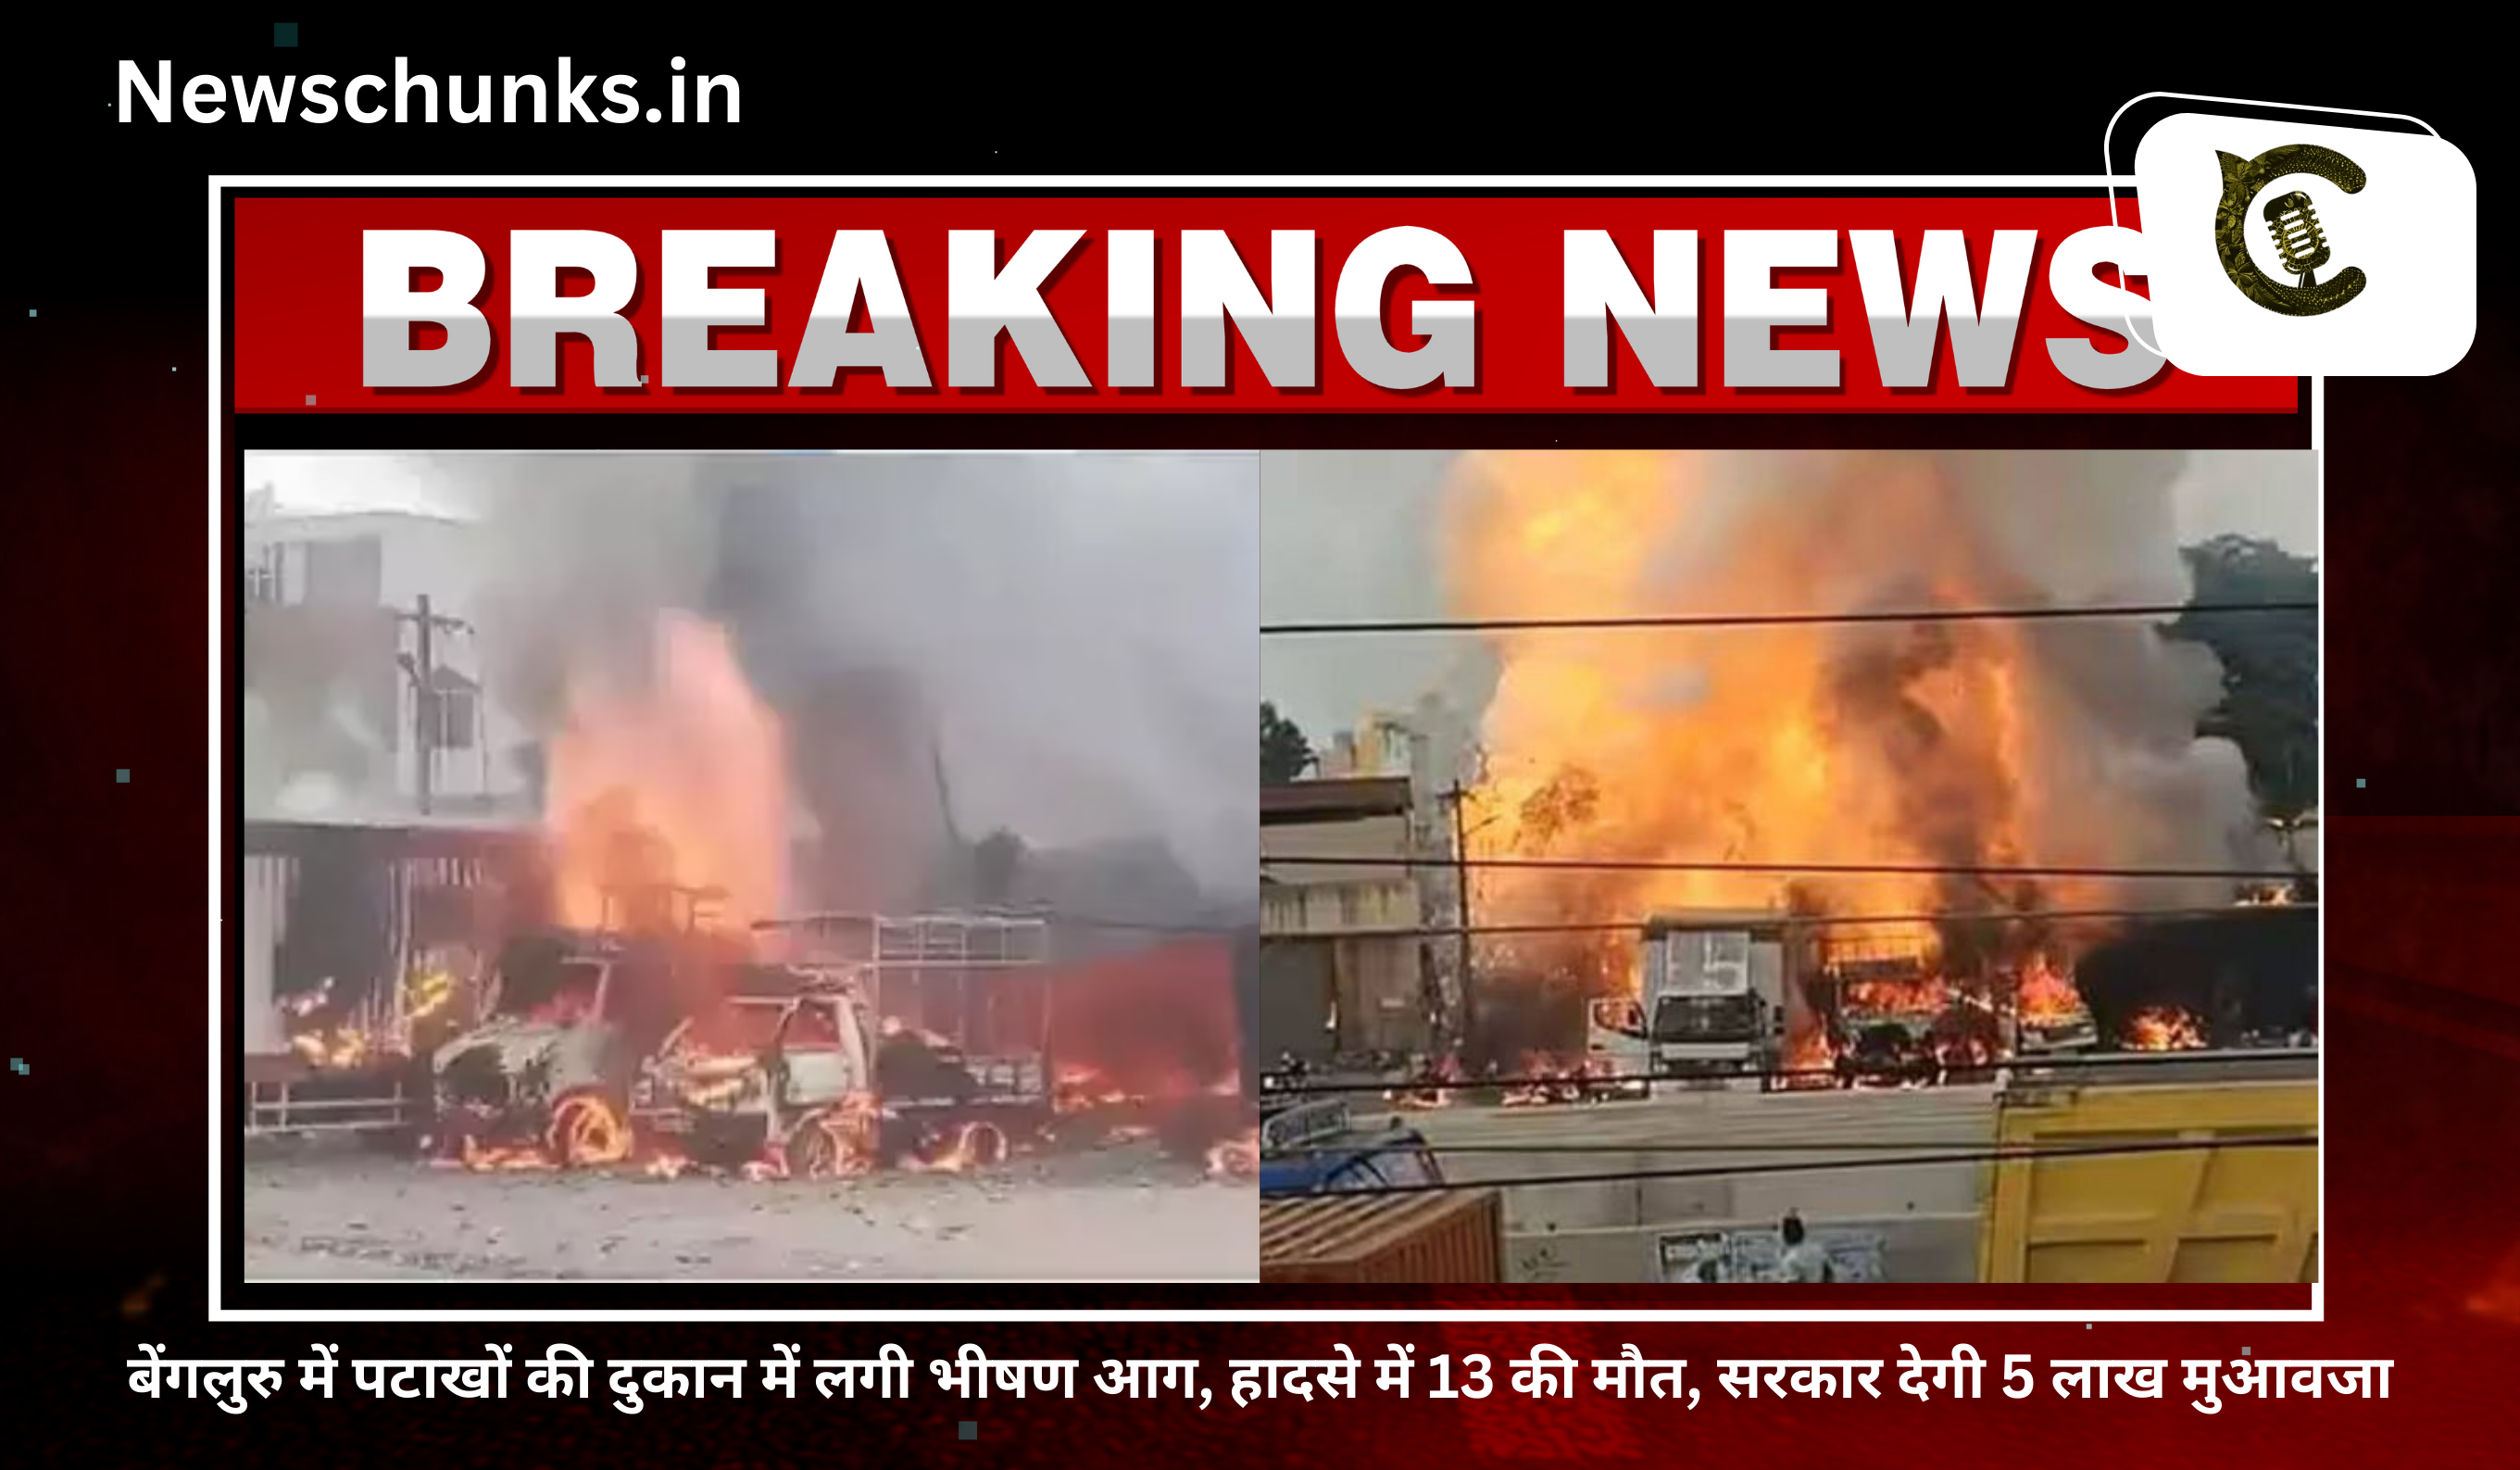 major fire breaks out in firecracker shop in bengaluru: बेंगलुरु में पटाखों की दुकान में लगी भीषण आग, हादसे में 13 की मौत, सरकार देगी 5 लाख मुआवजा